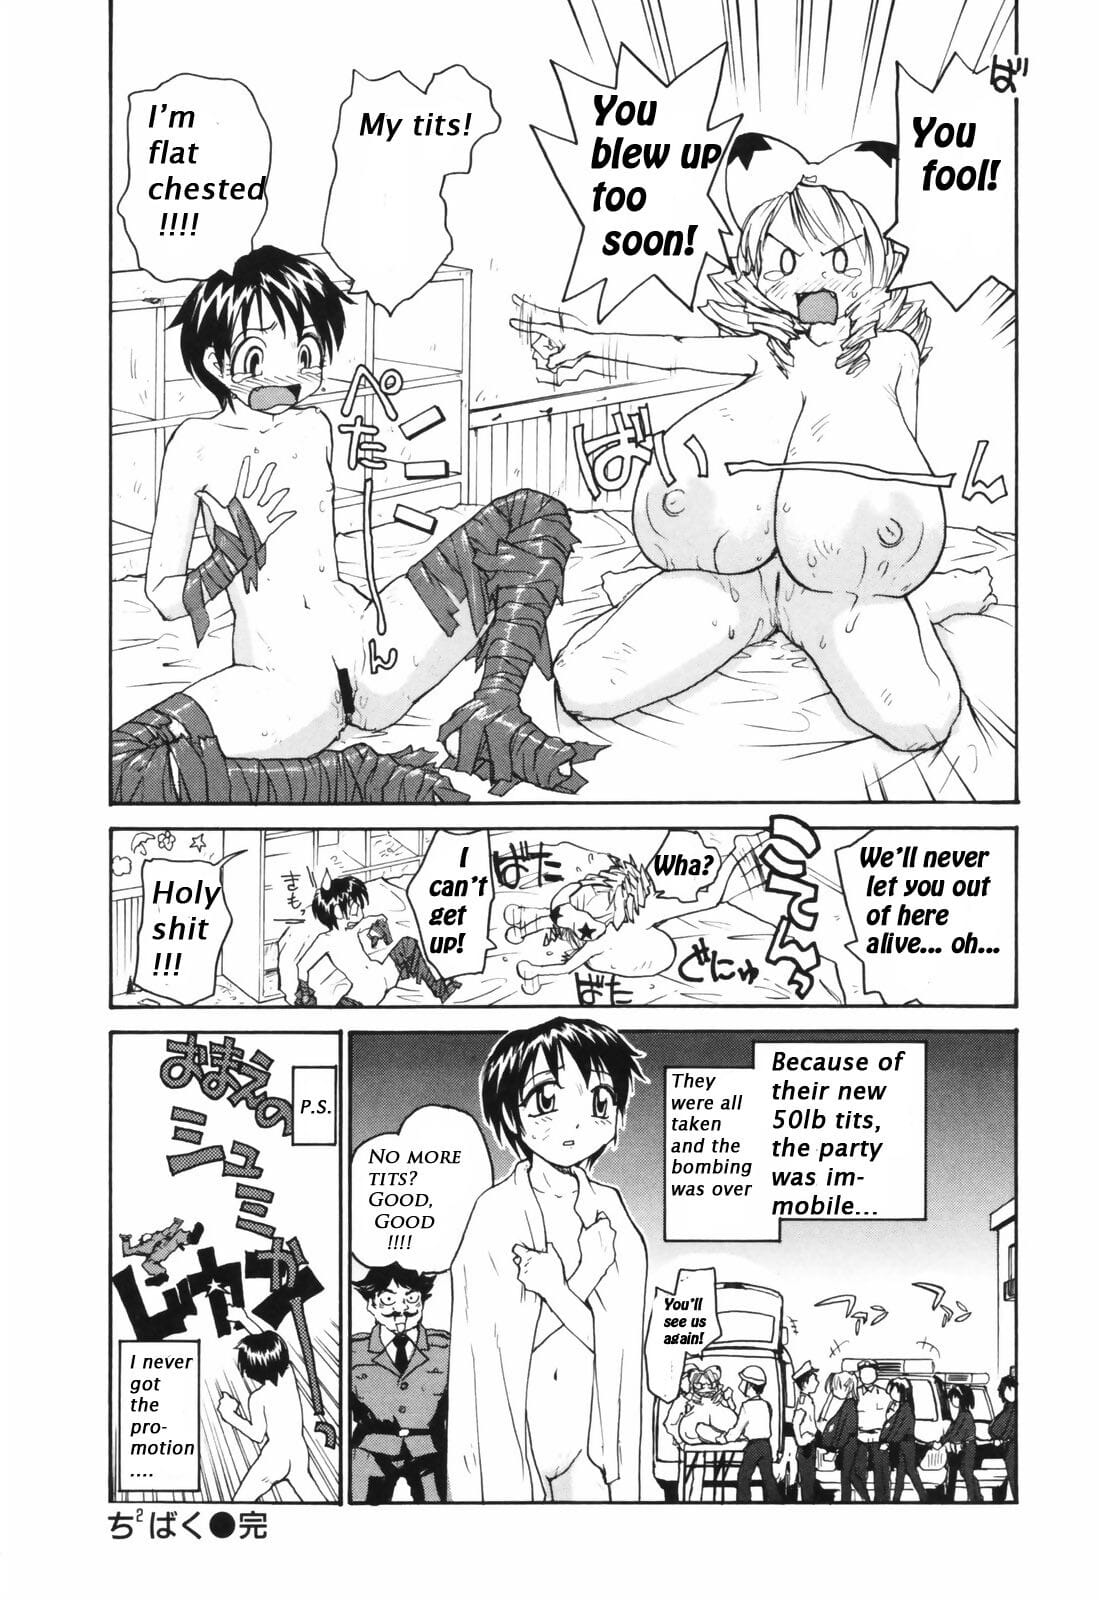 Chichi บากู Chichi มือระเบิด boobicide bombshells page 1